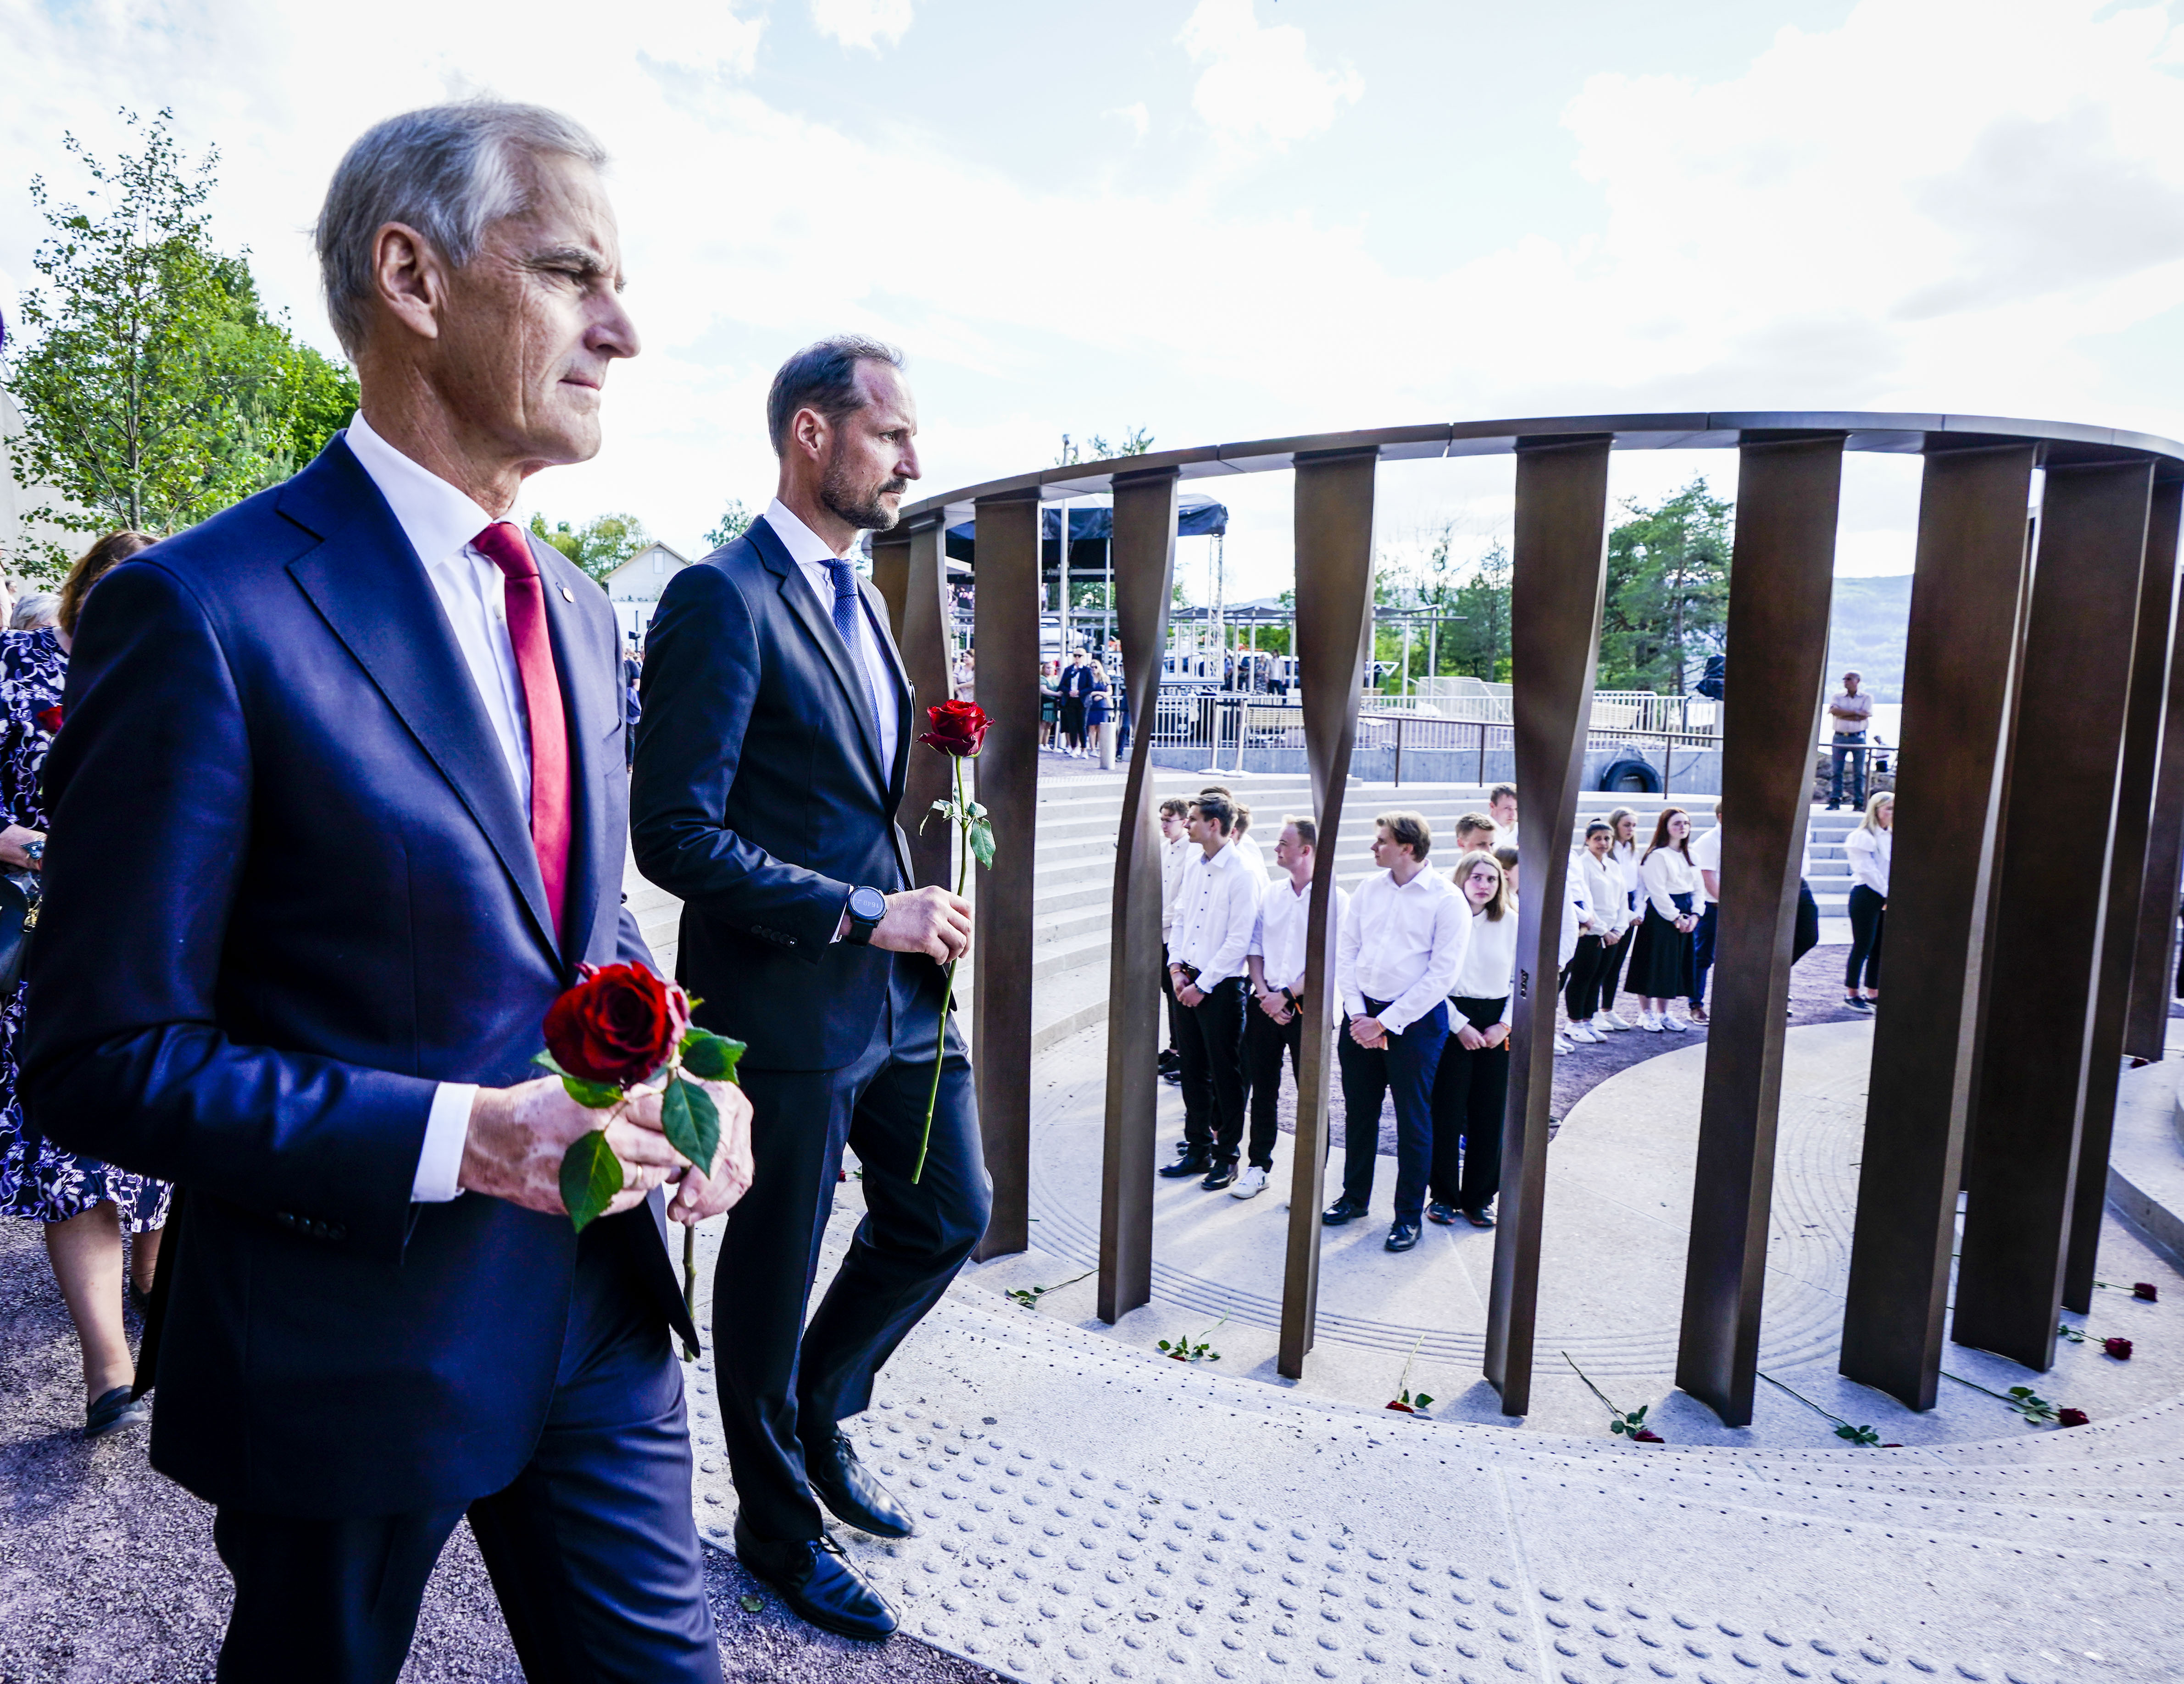 Jonas Gahr Støre og kronprins Håkon holder en rose hver. Bak dem ser vi de 77 søylene i bronse som er for å minne de som døde 22. juli.